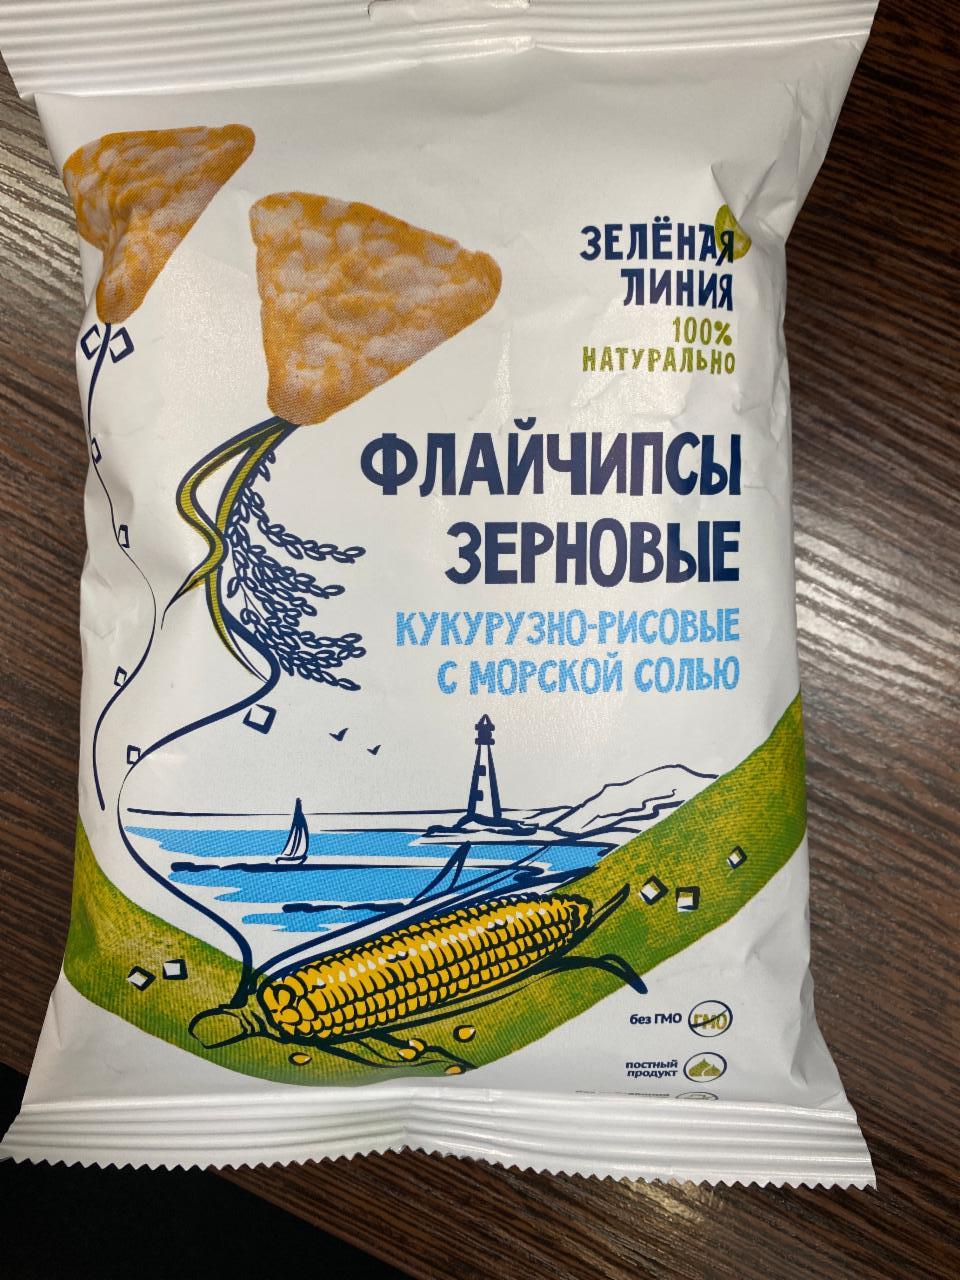 Фото - Флайчипсы зерновые кукурузно-рисовые с морской солью Зеленая линия